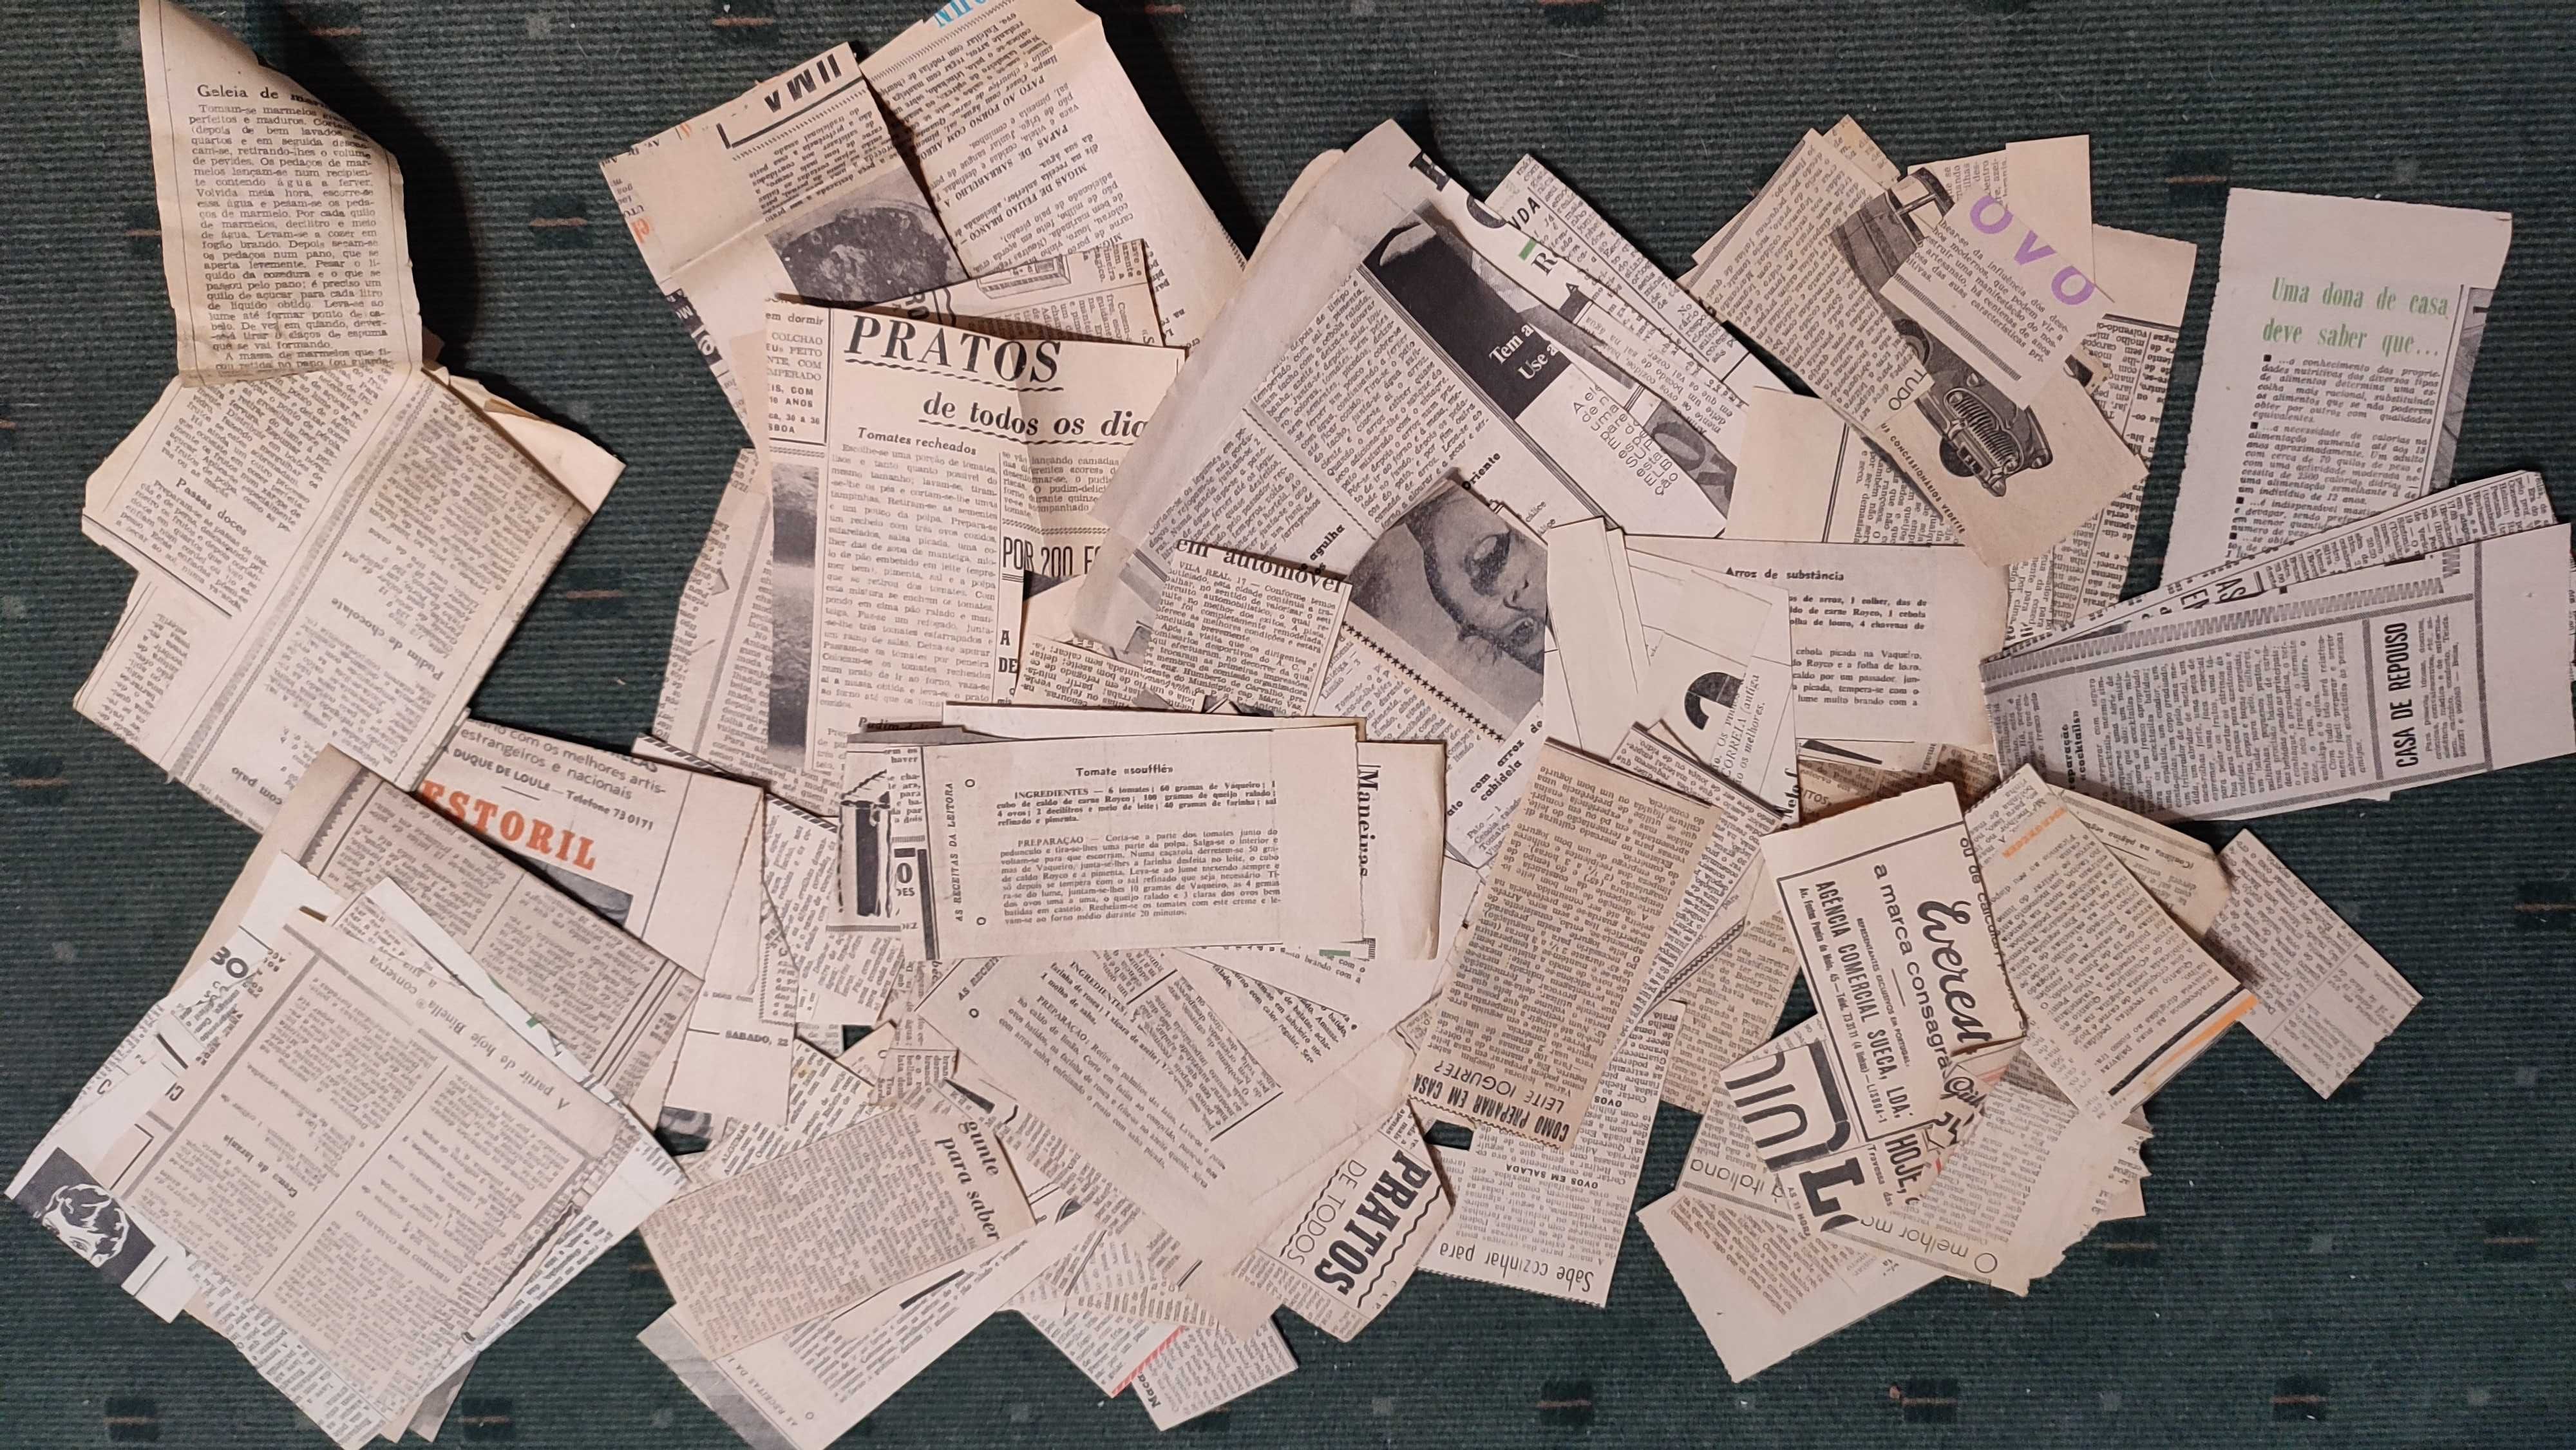 Lote com mais de 500 receitas antigas recortes de jornais e revistas